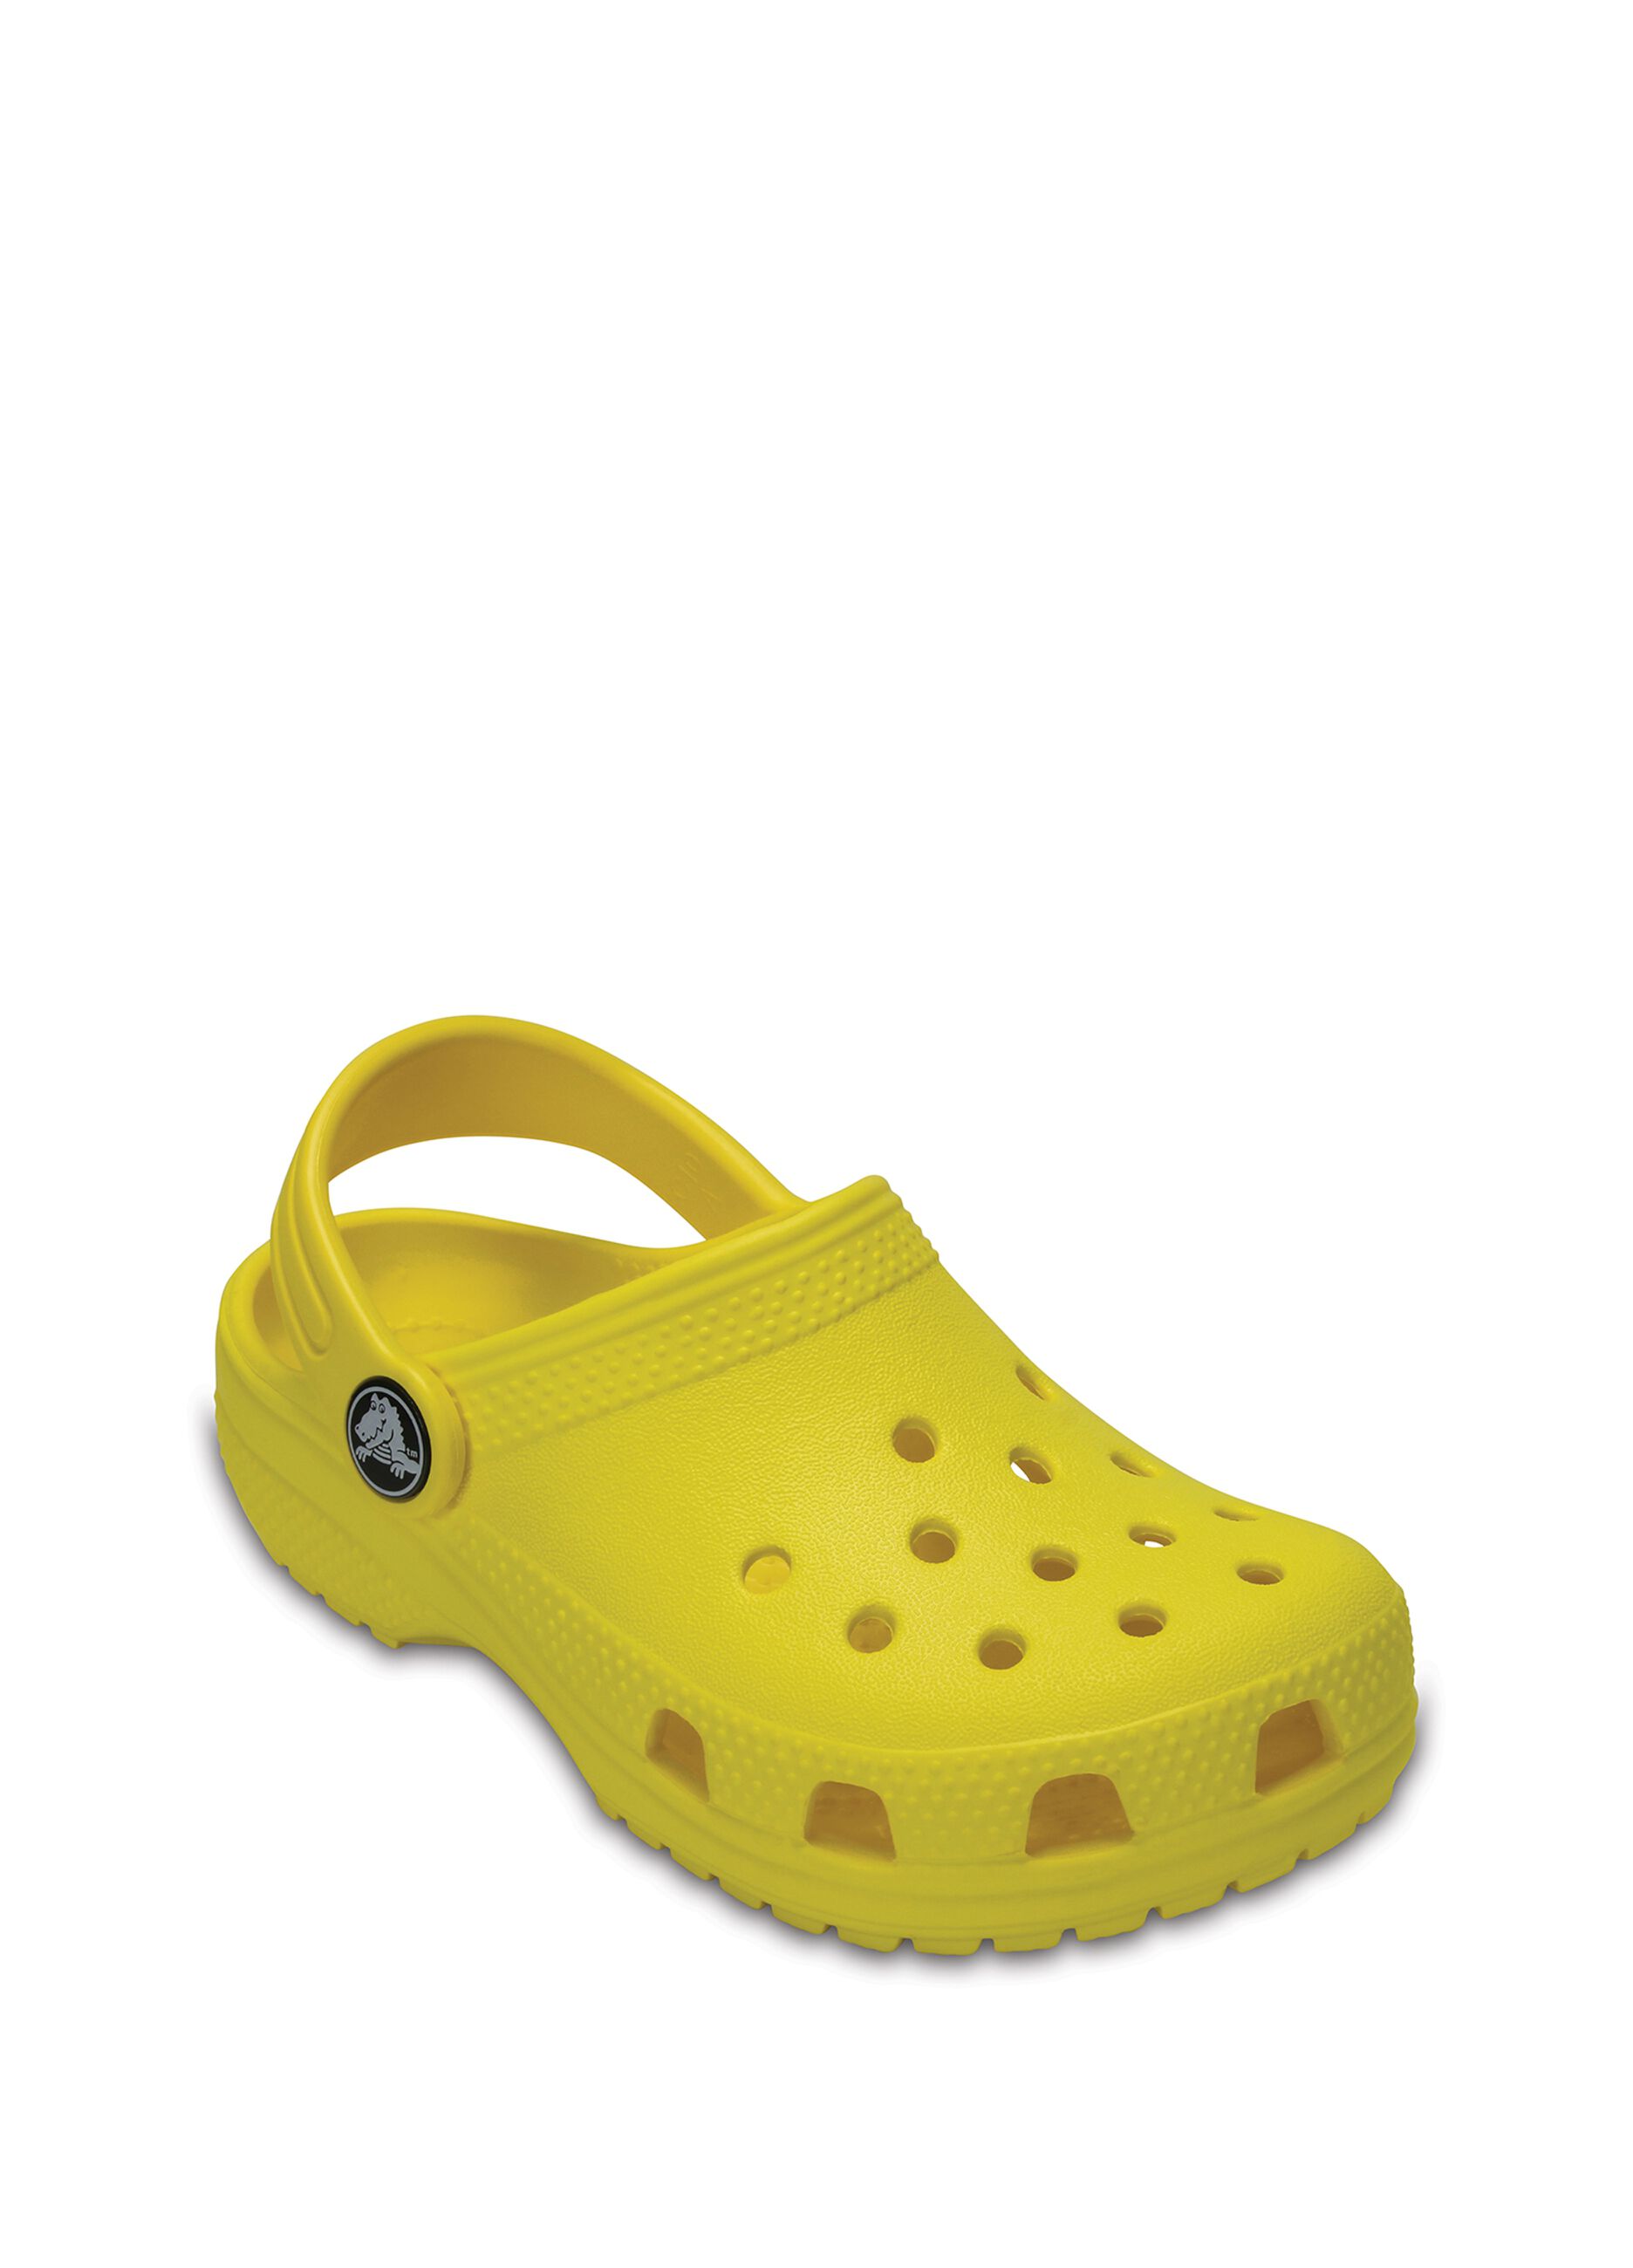 Crocs Classic Clog_1